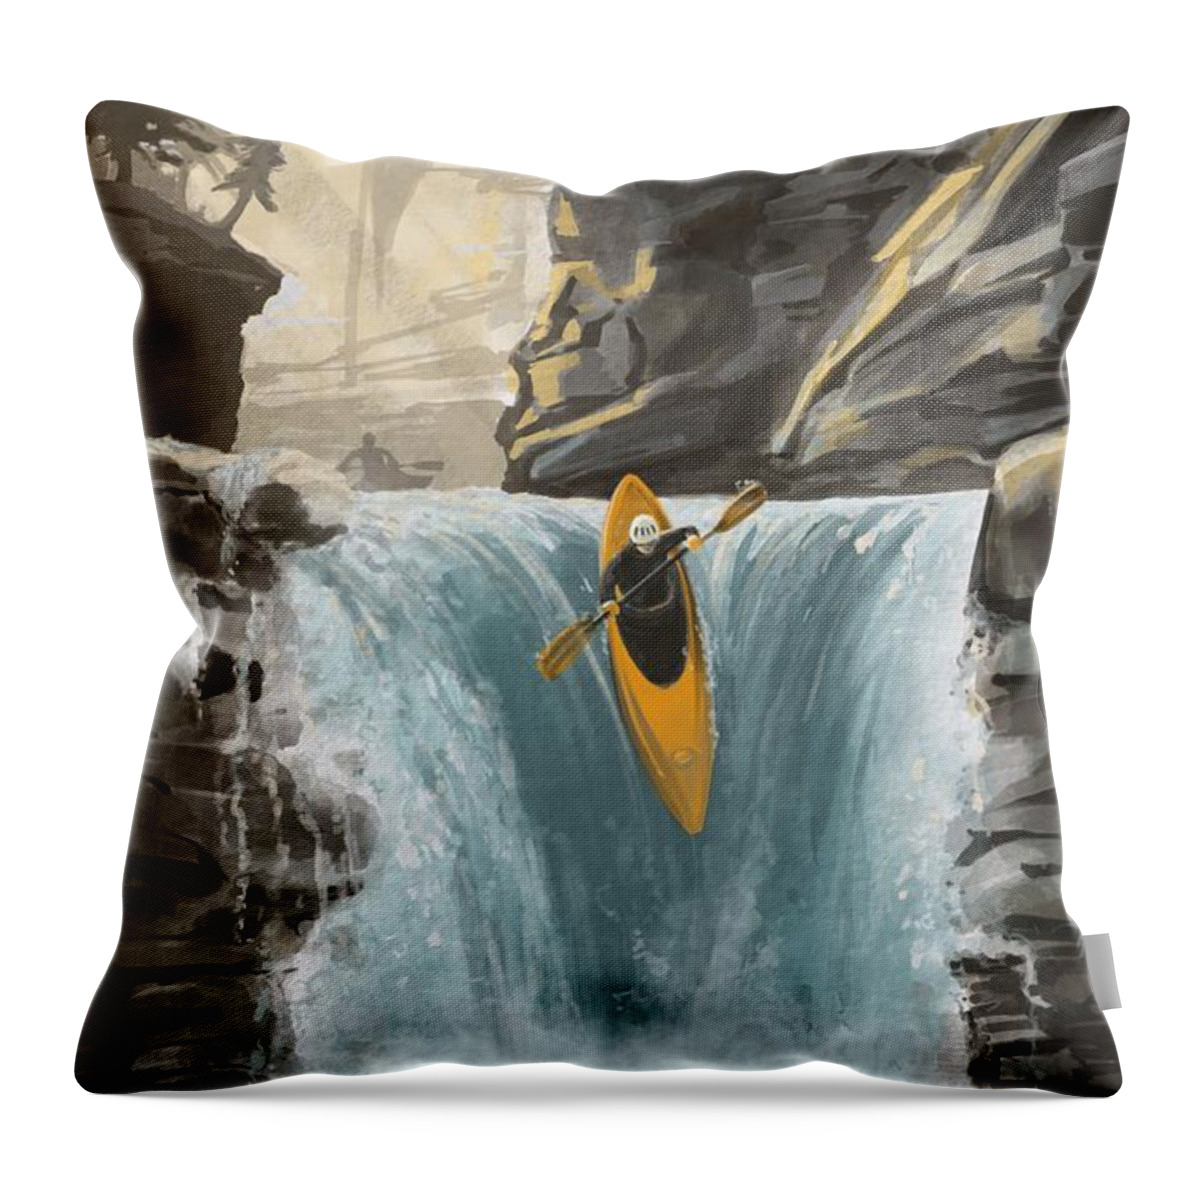 Kayak Throw Pillow featuring the painting White water kayaking by Sassan Filsoof